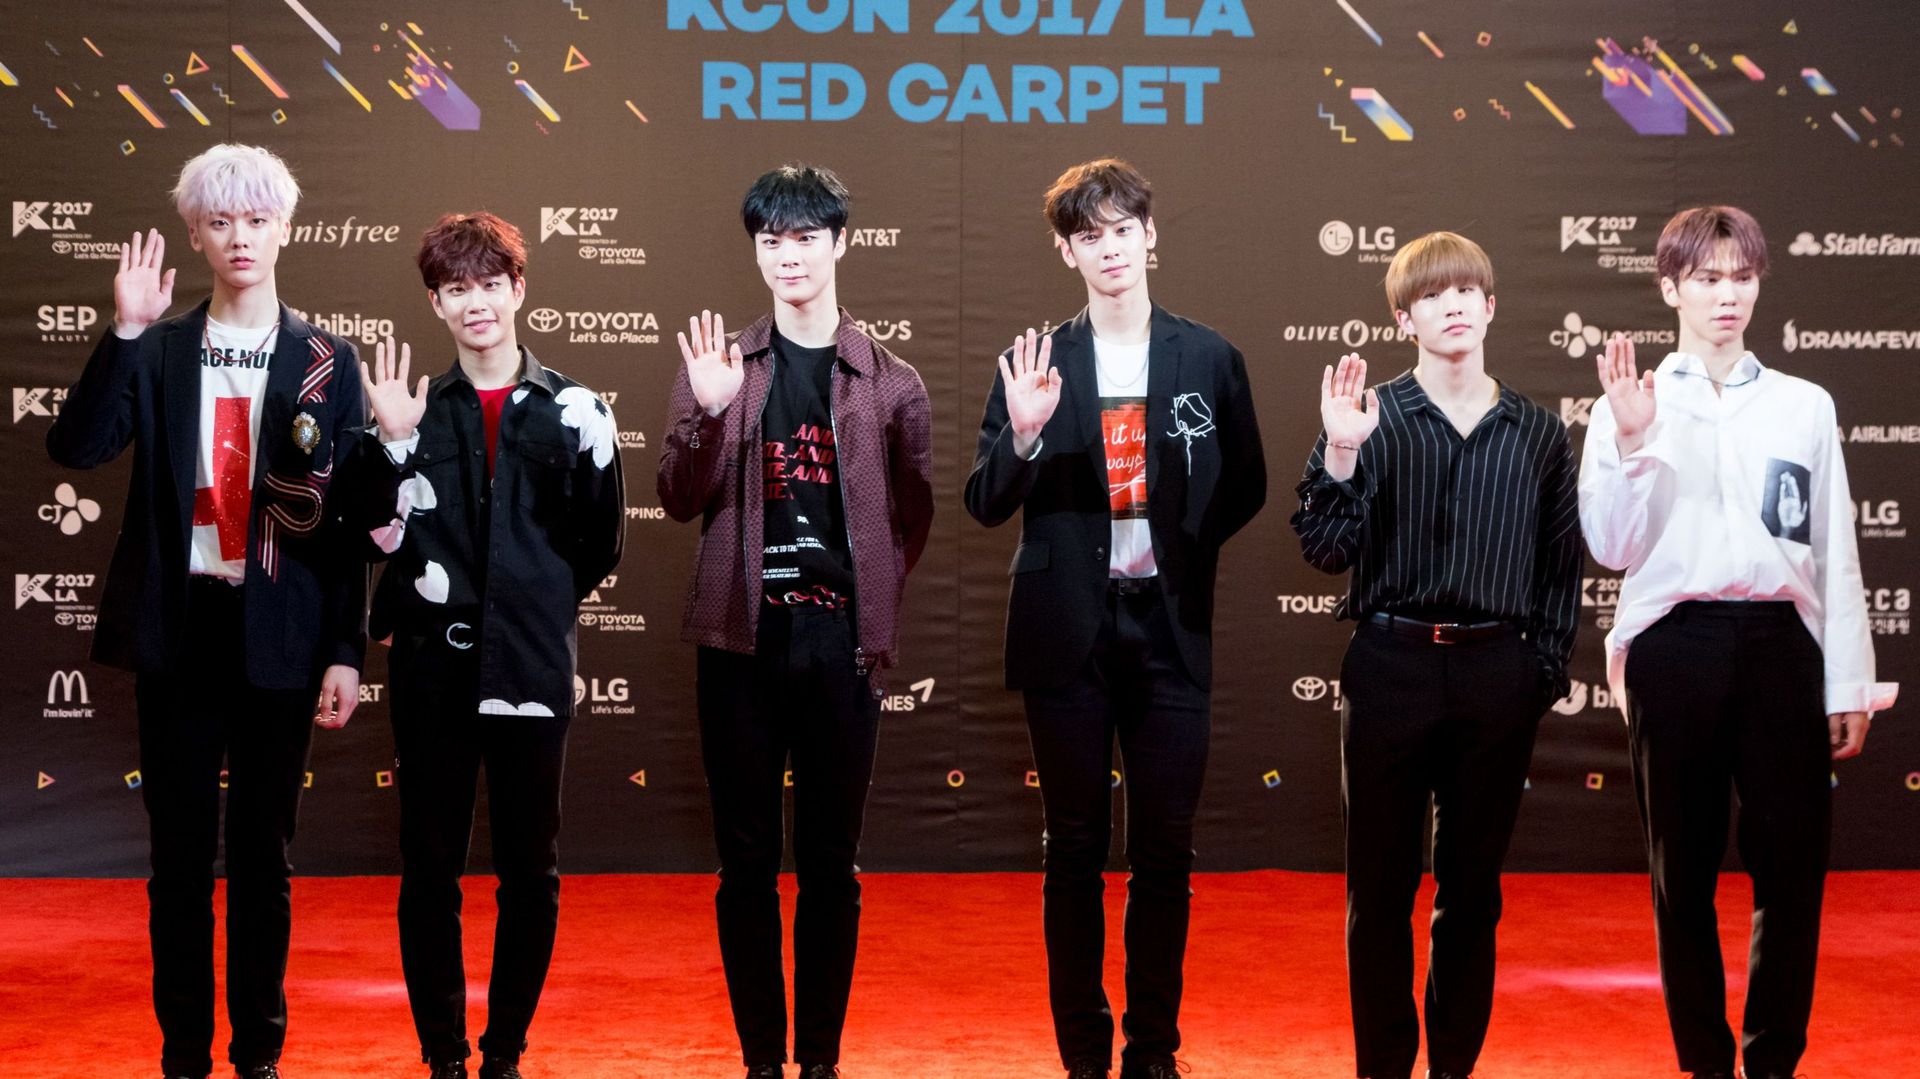 Moonbin (quatrième personne en partant de la gauche), faisait partie du groupe de K-pop Astro.